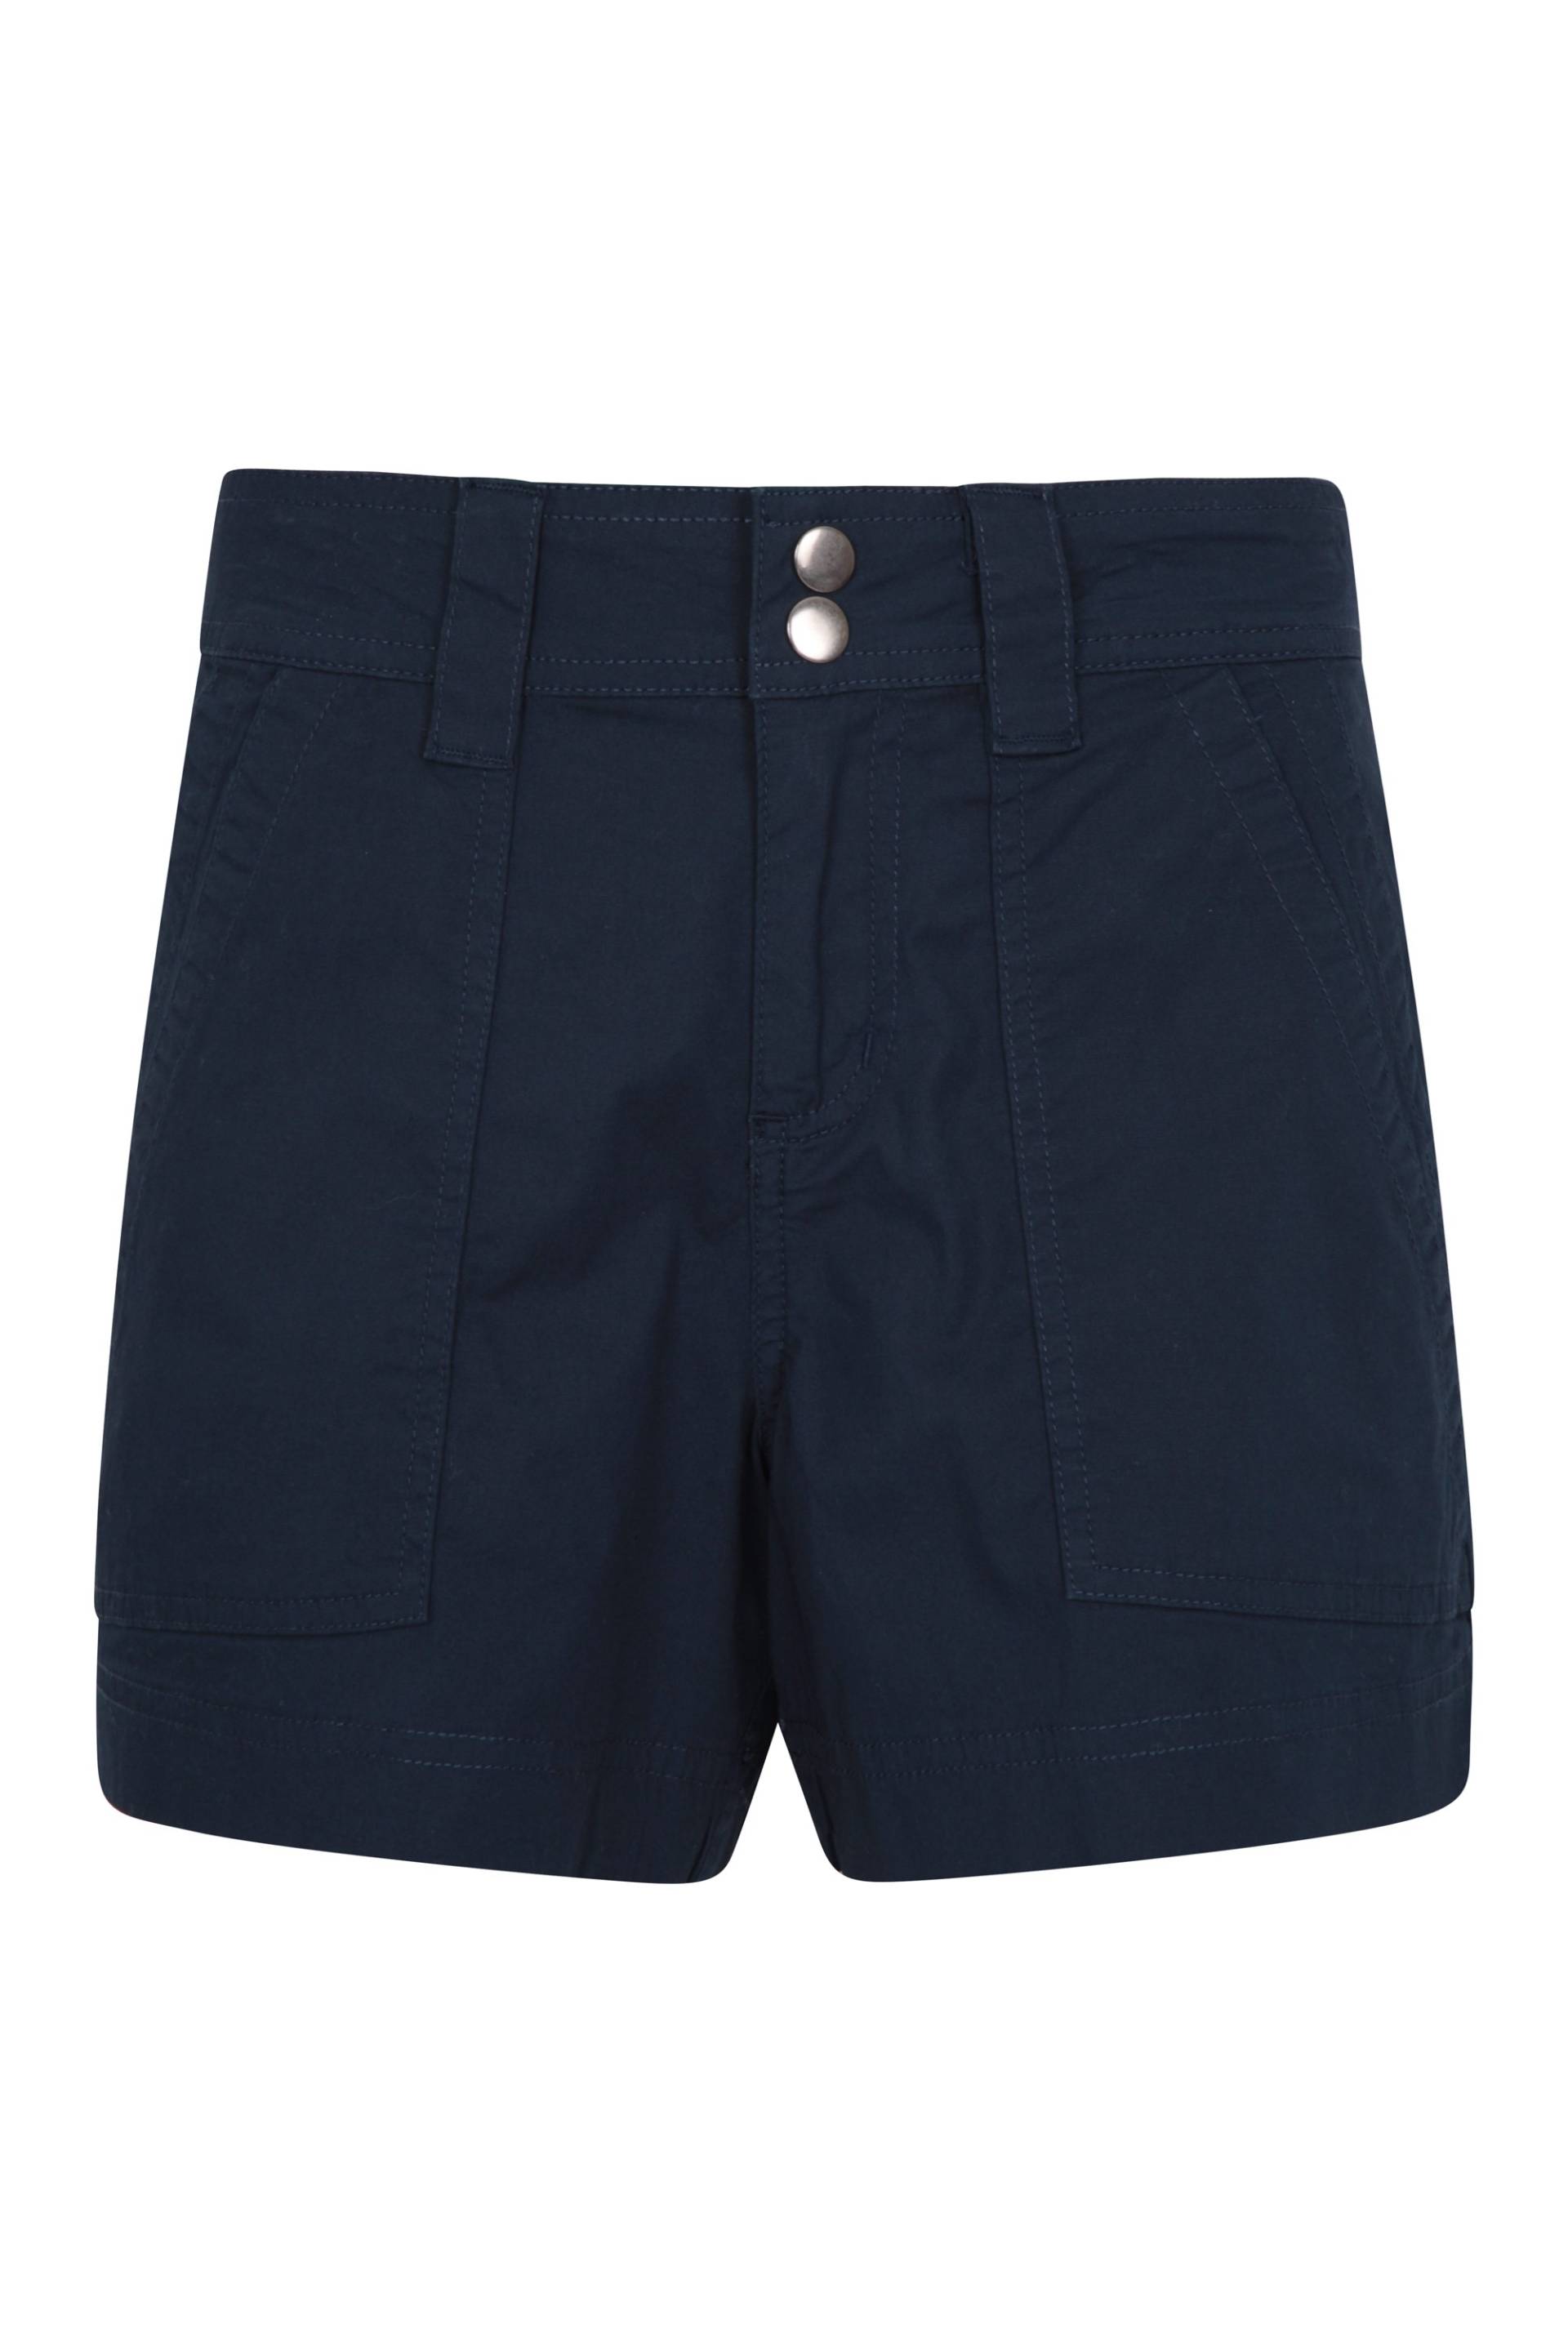 Coast Damen Shorty-Shorts - Marineblau von Mountain Warehouse